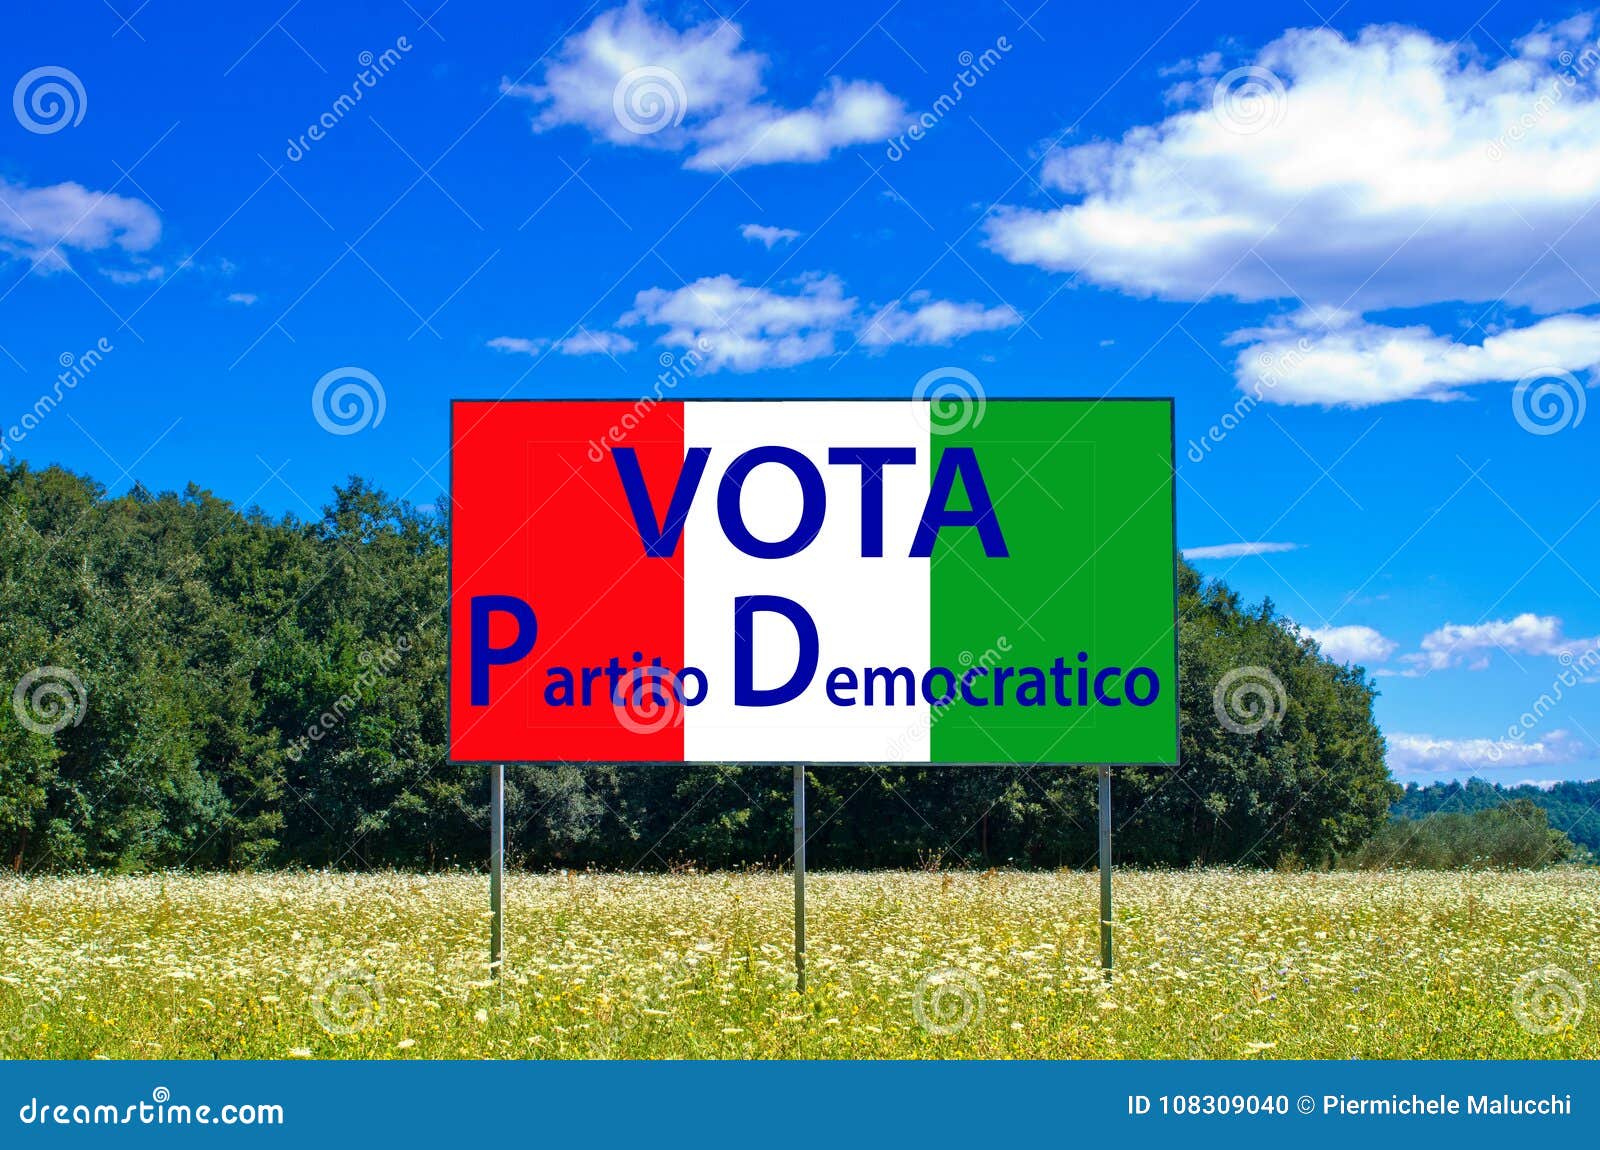 in the next elections save italy, vote partito democratico pd